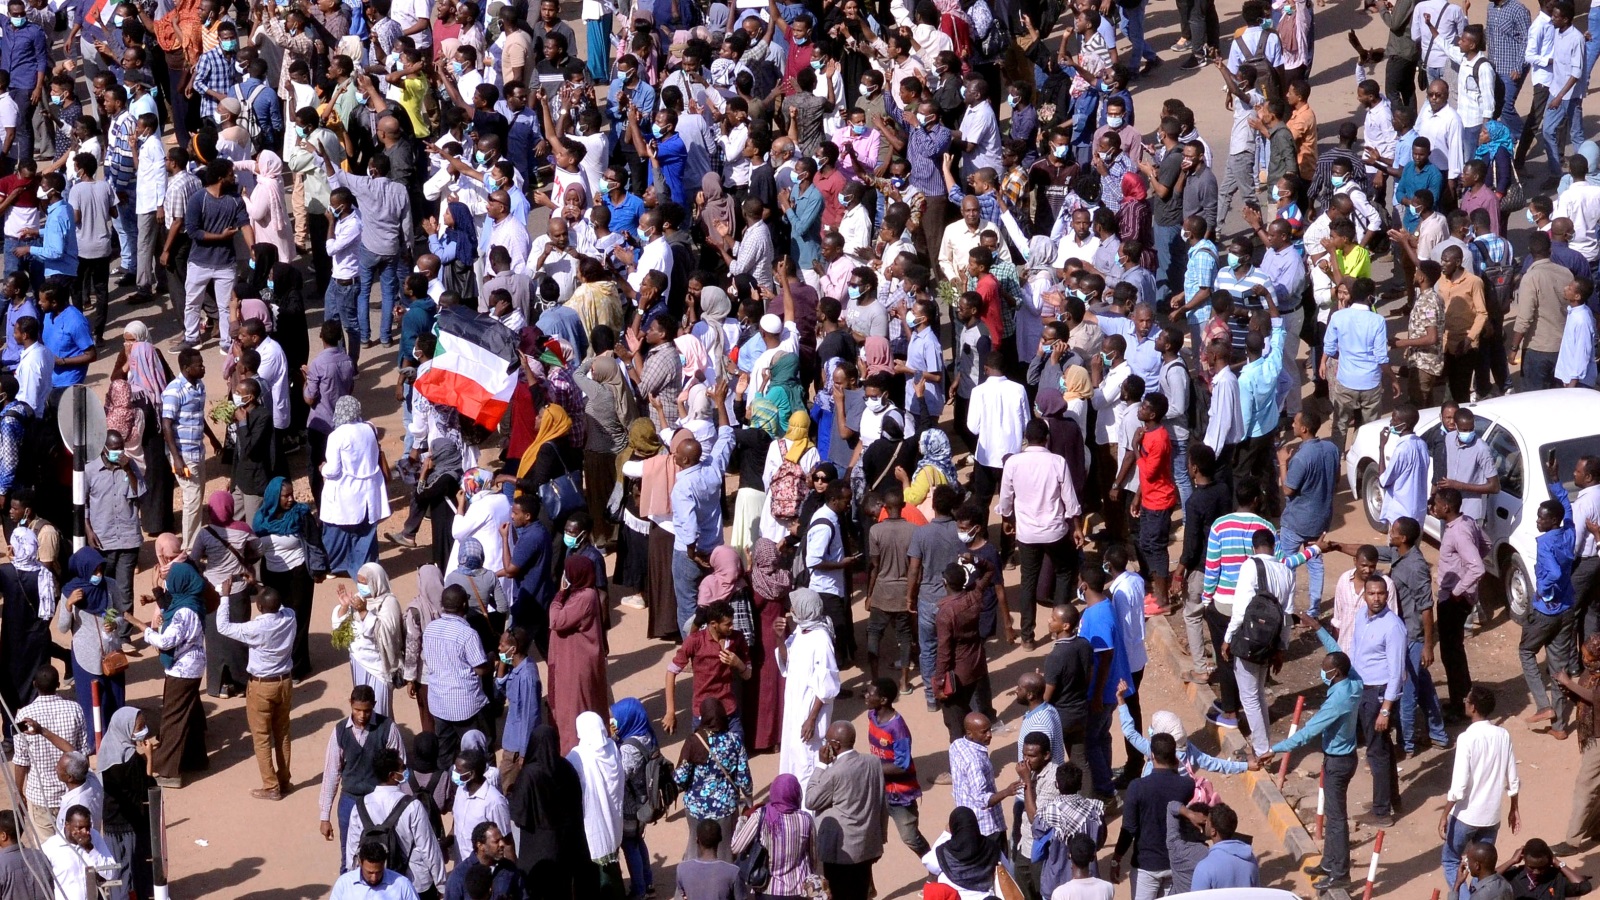 ‪شهدت الخرطوم في اليوم السابع من الاحتجاجات محاولات لوصول الحشود للقصر الرئاسي‬ (رويترز)